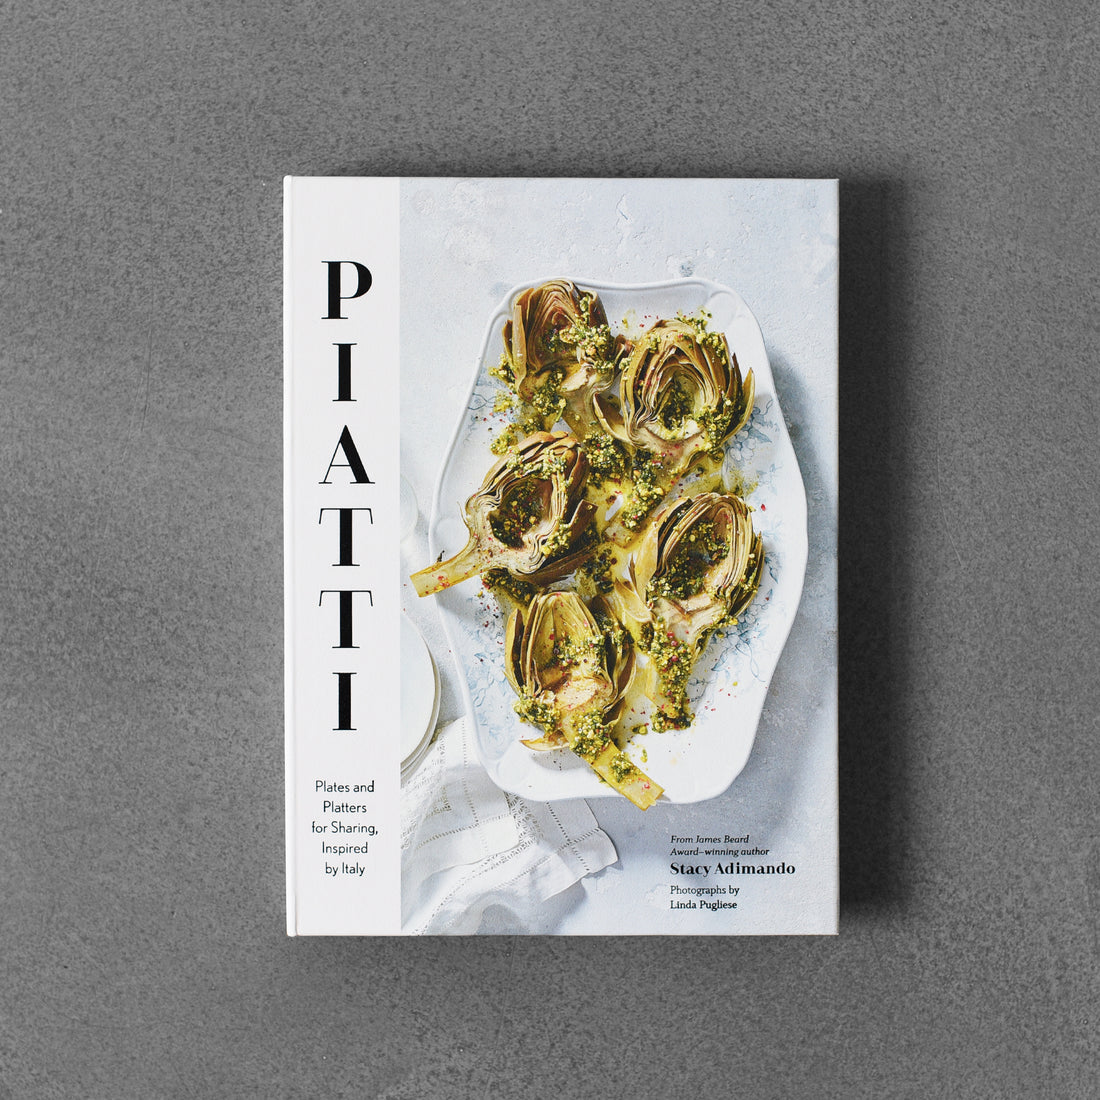 Piatti: talerze i półmiski do dzielenia się, inspirowane Włochami